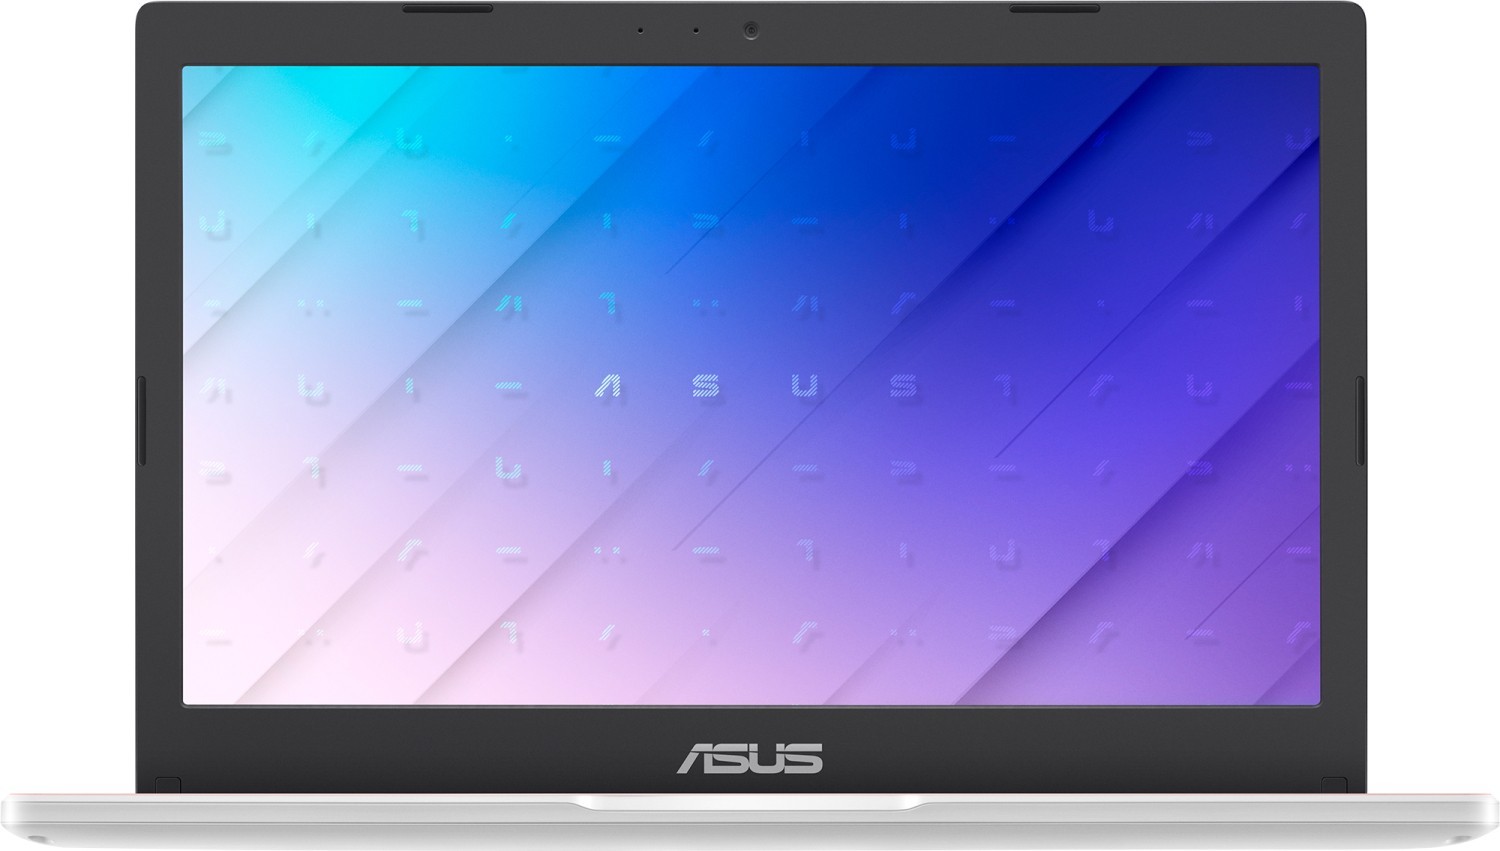 Ноутбук Asus R702ma Gml R Bx192t Купить